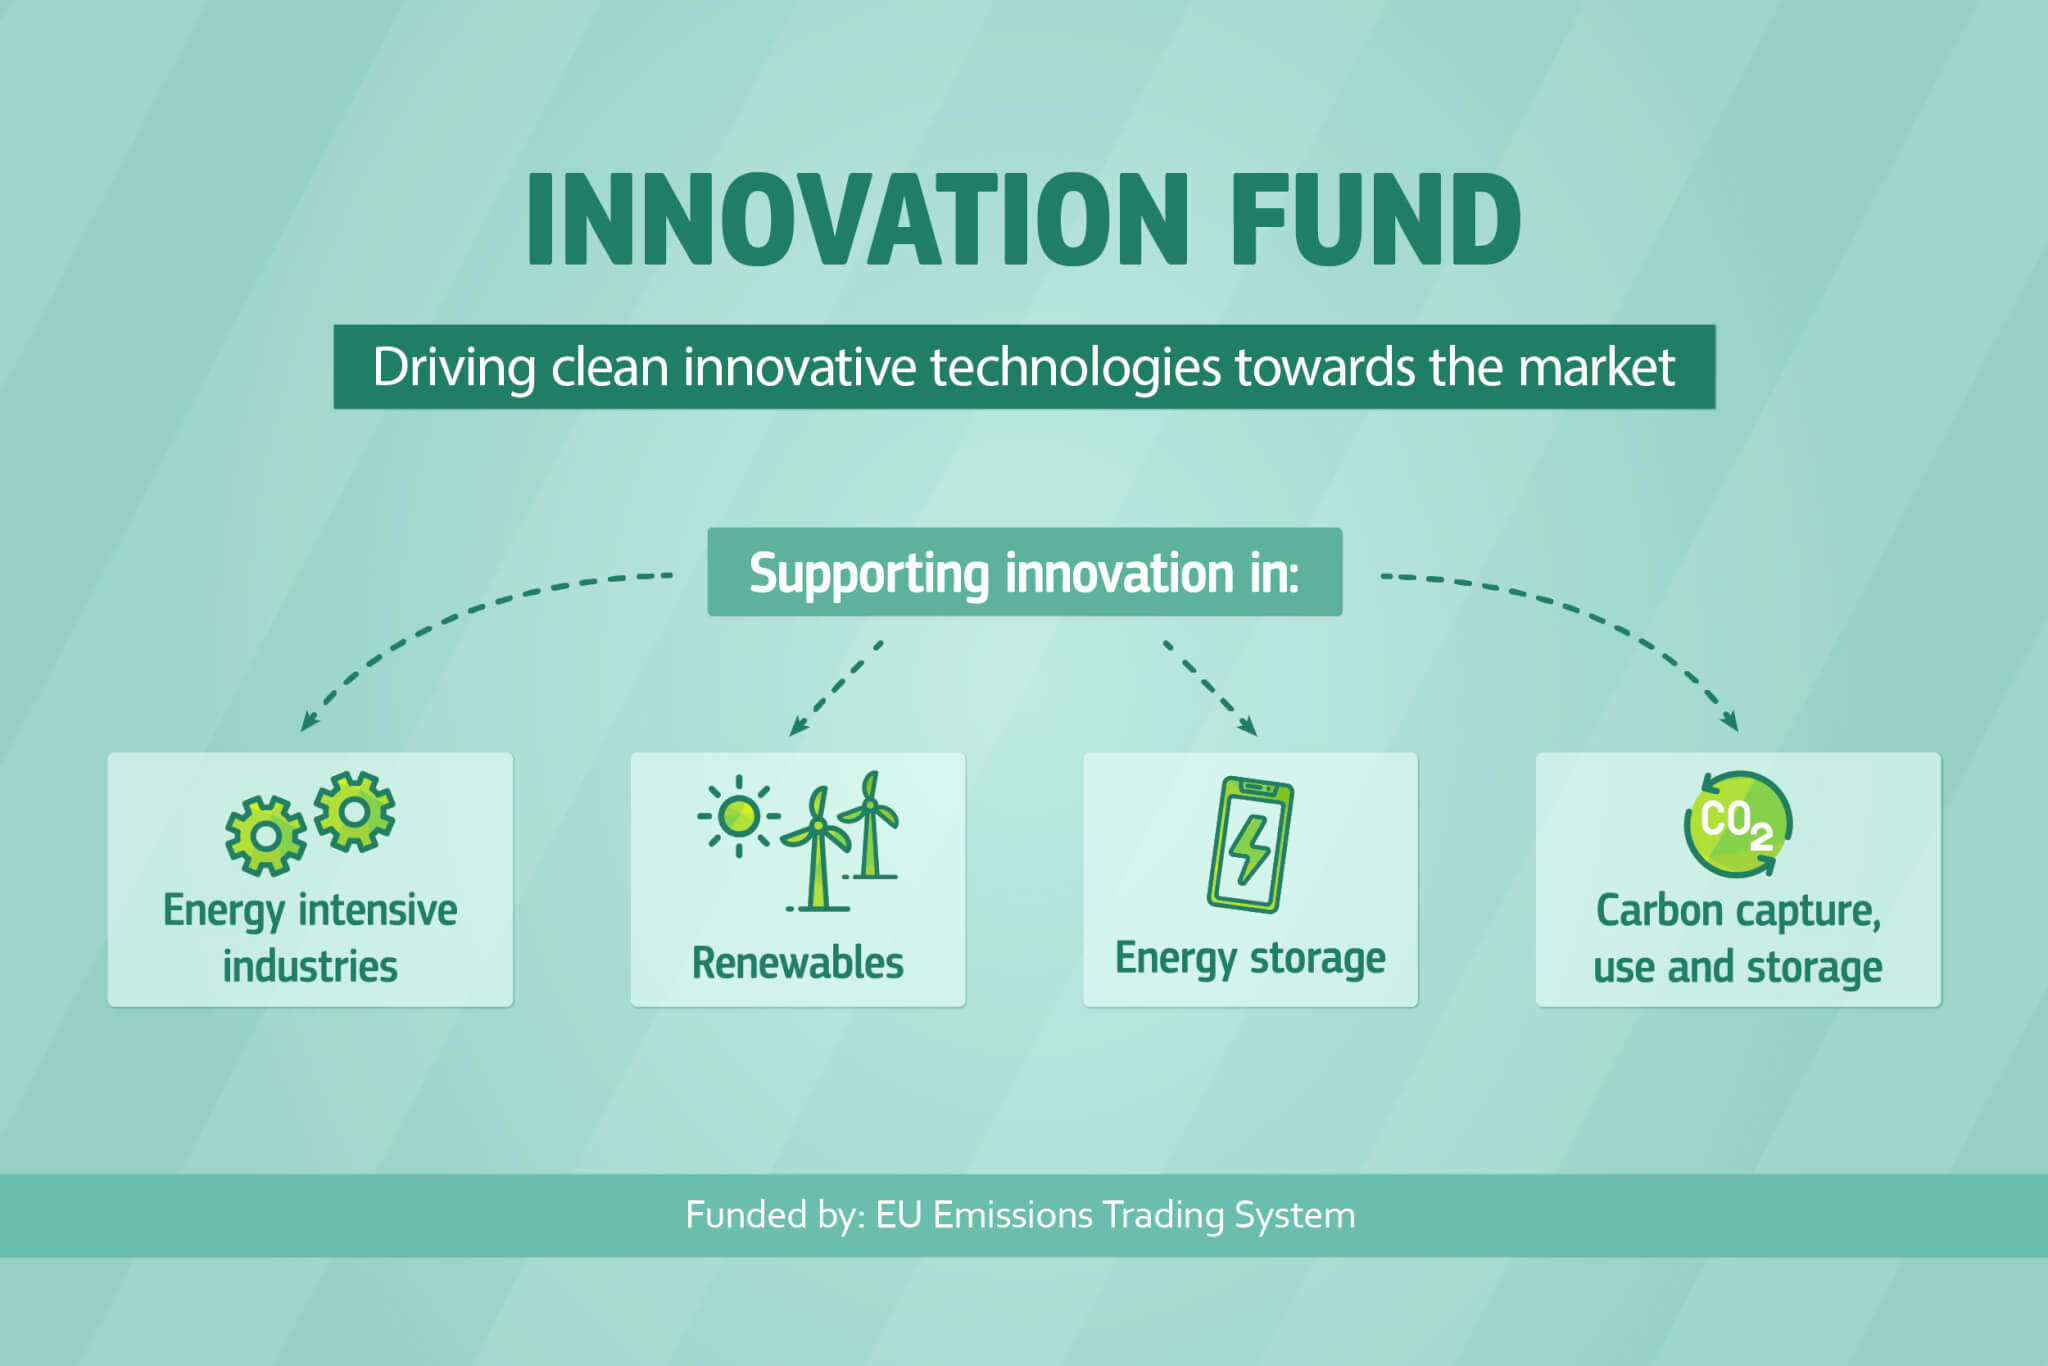 Sectoren waarin innovatie wordt gesteund door het Innovation Fund